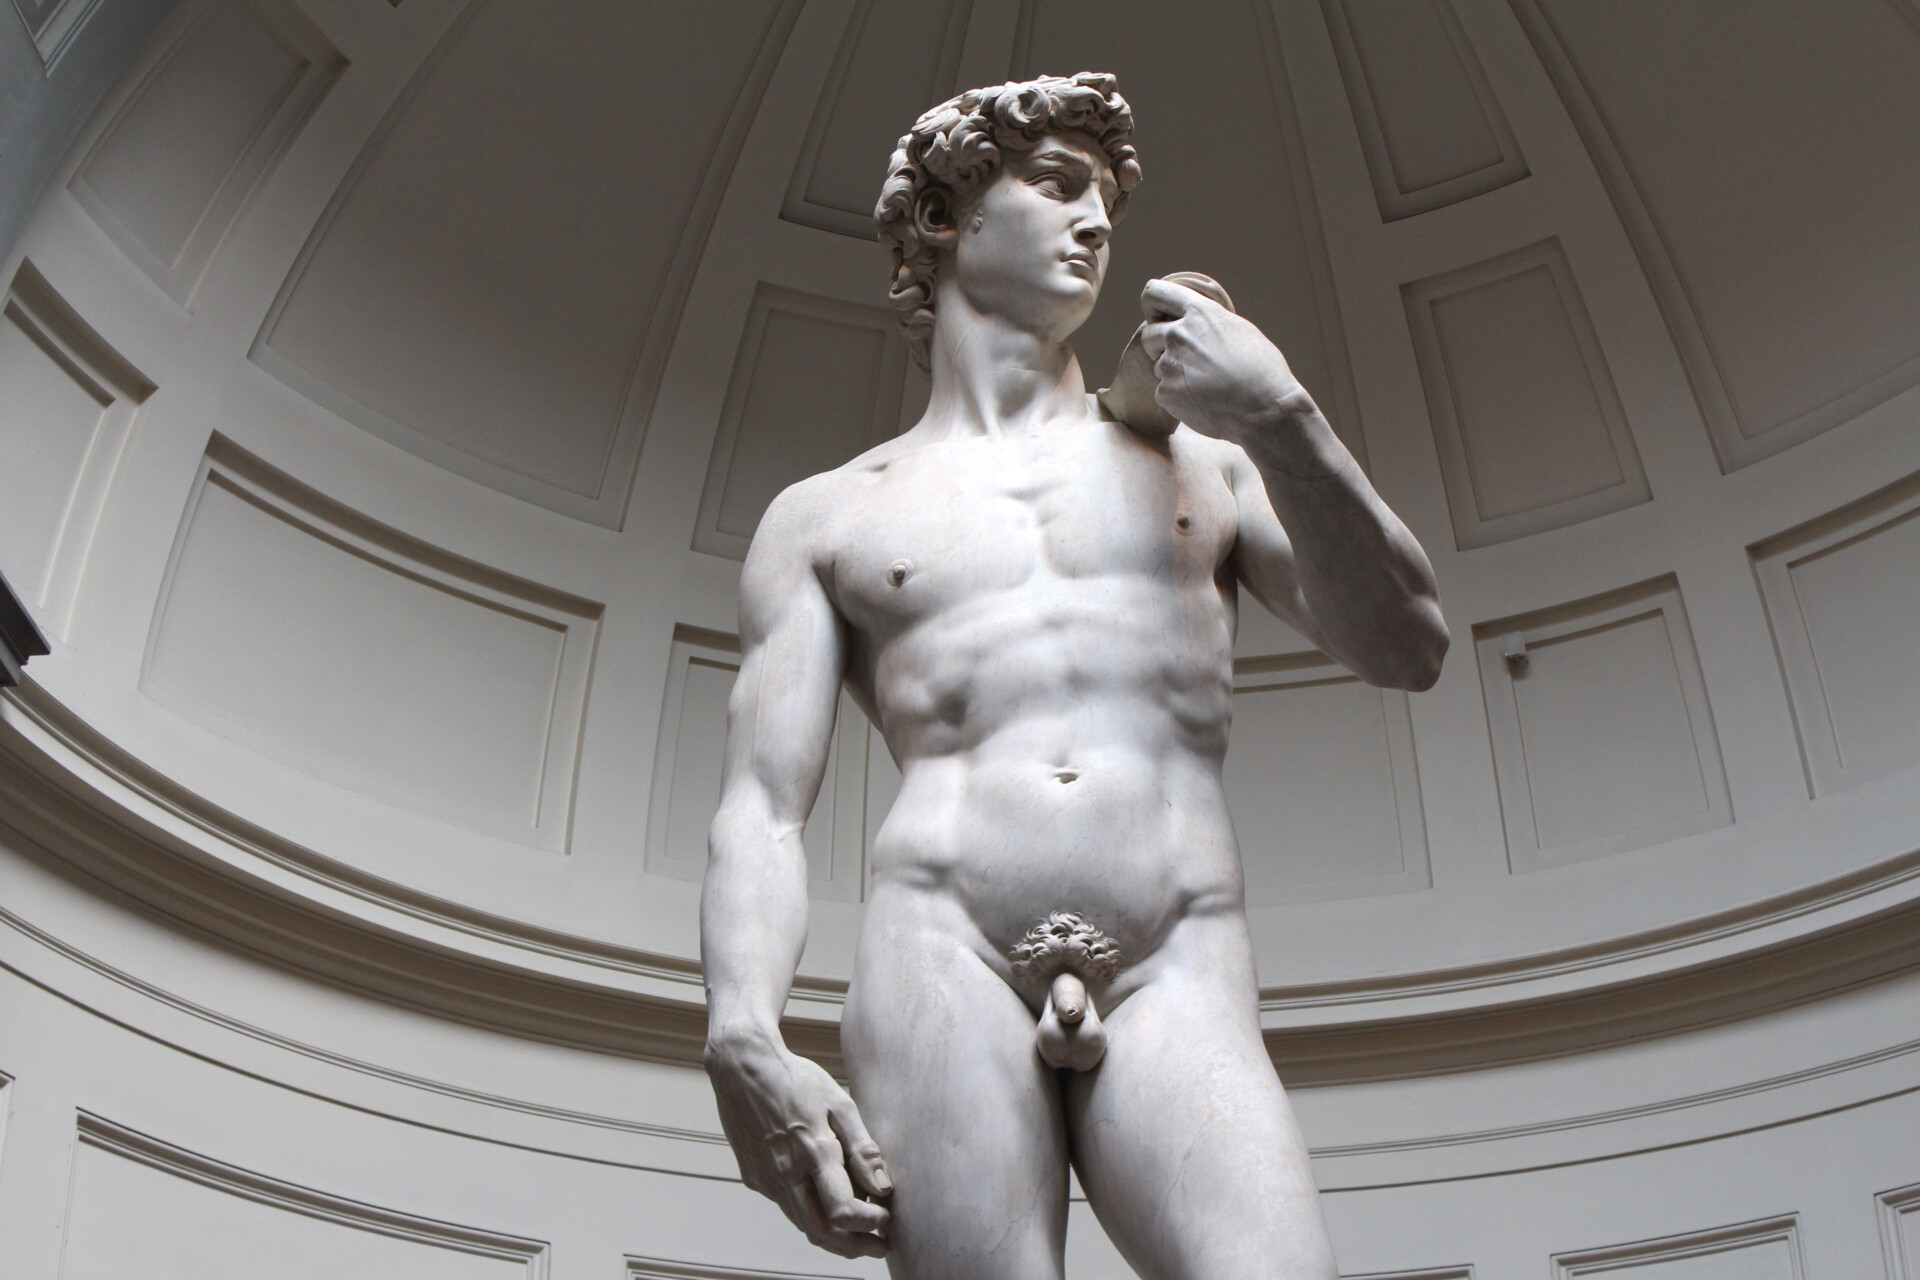 David jest arcydziełem renesansowej rzeźby stworzonej z marmuru przez Michała Anioła